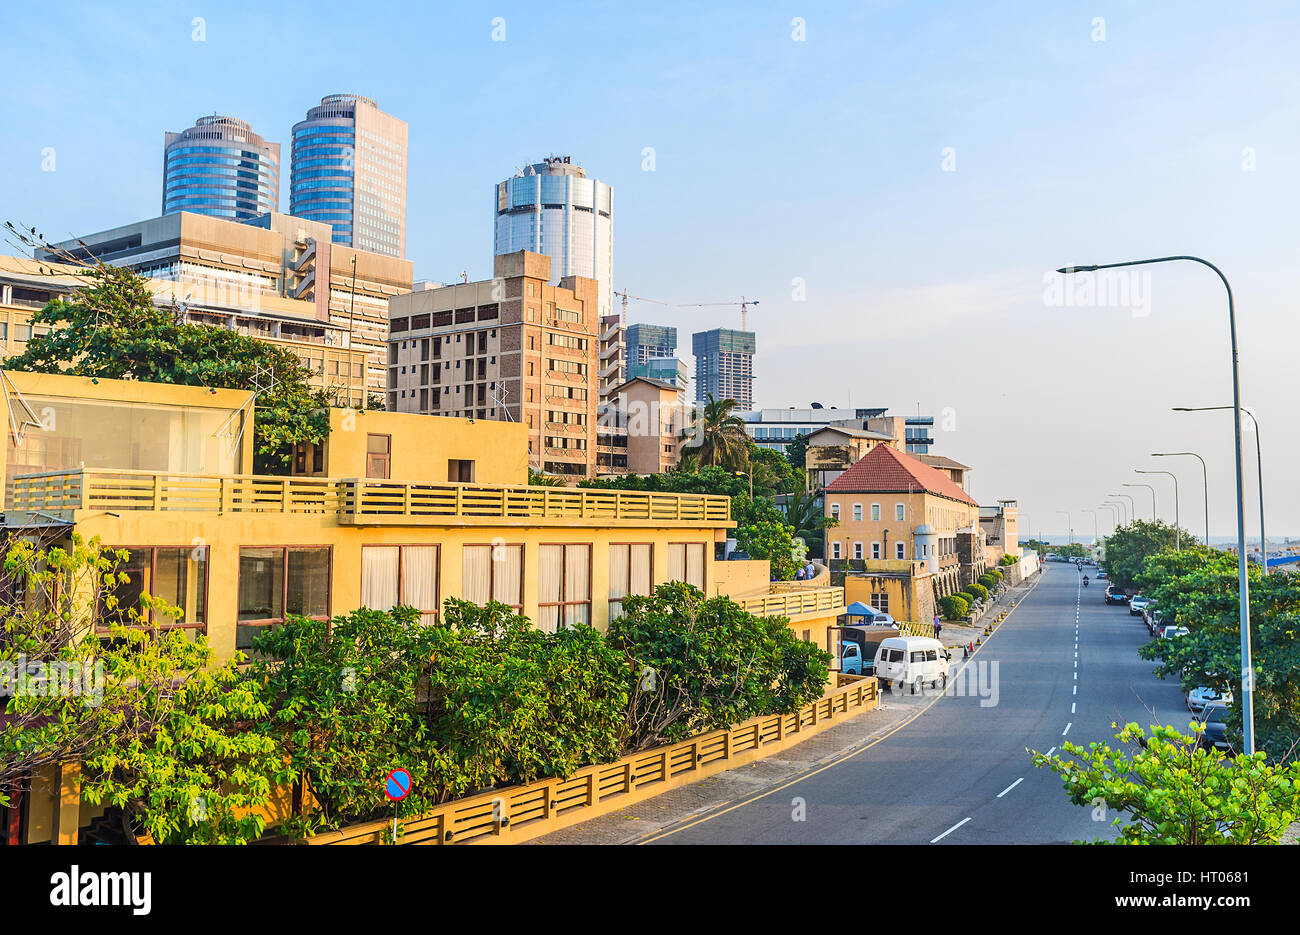 La zona costiera accanto al nuovo faro, edifici e ombreggiata passeggiata lungo la strada Cahaithya, Colombo, Sri Lanka. Foto Stock